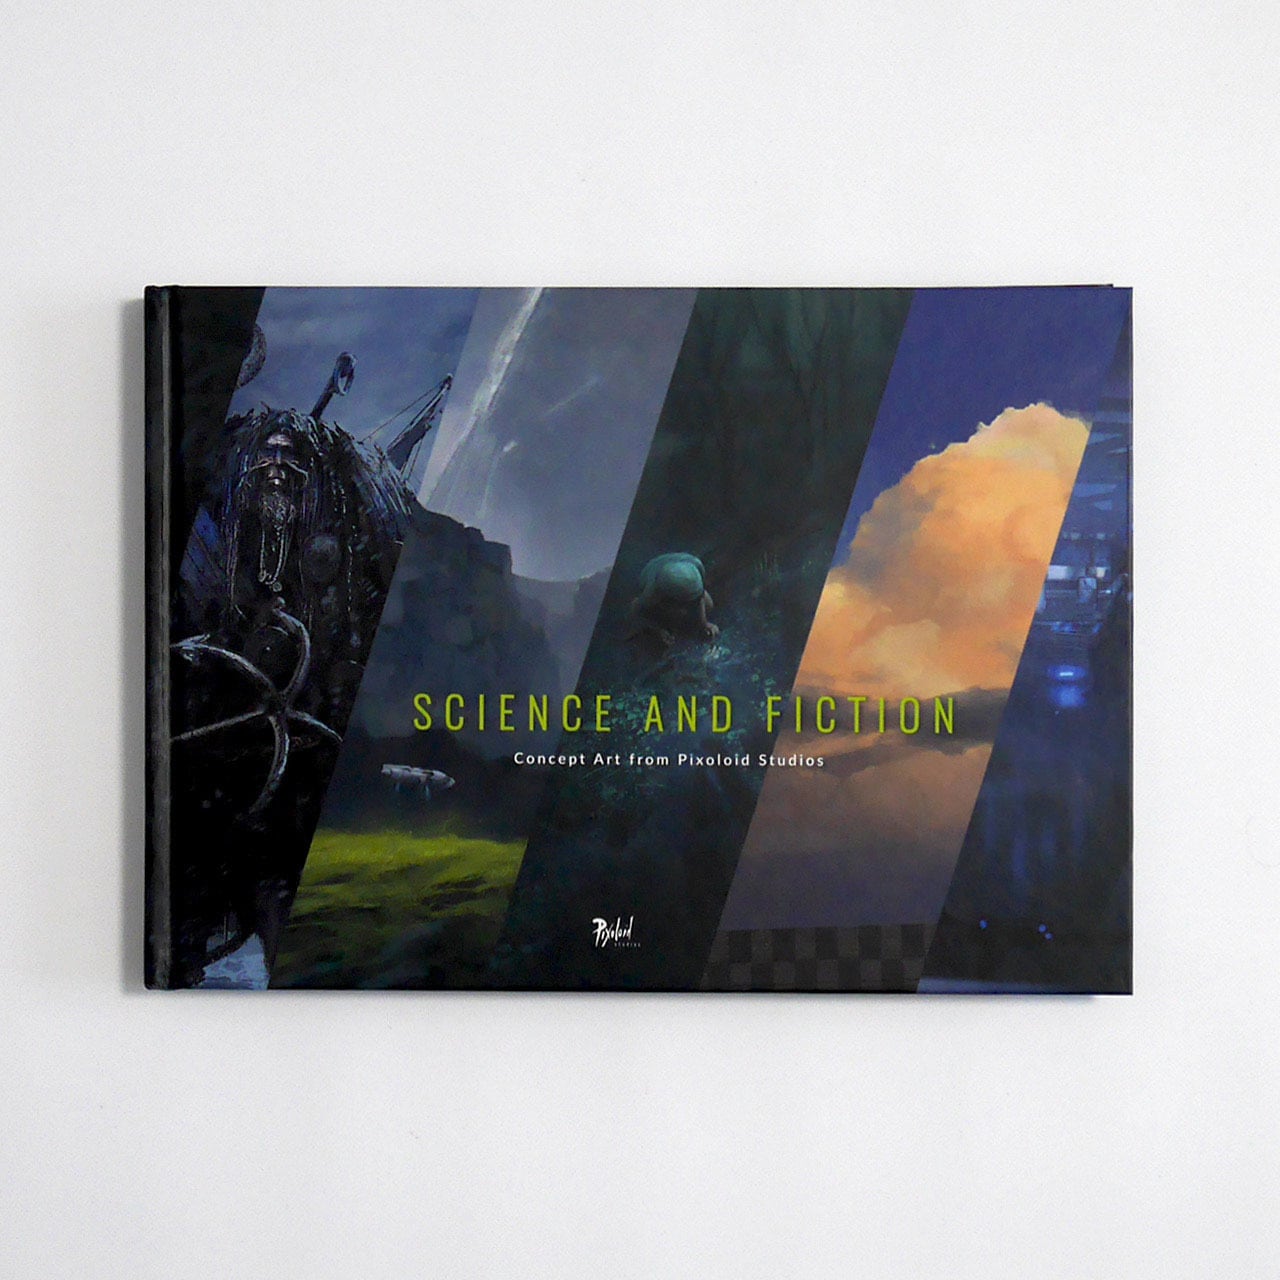 アートブック「Science and Fiction - Concept Art from Pixoloid